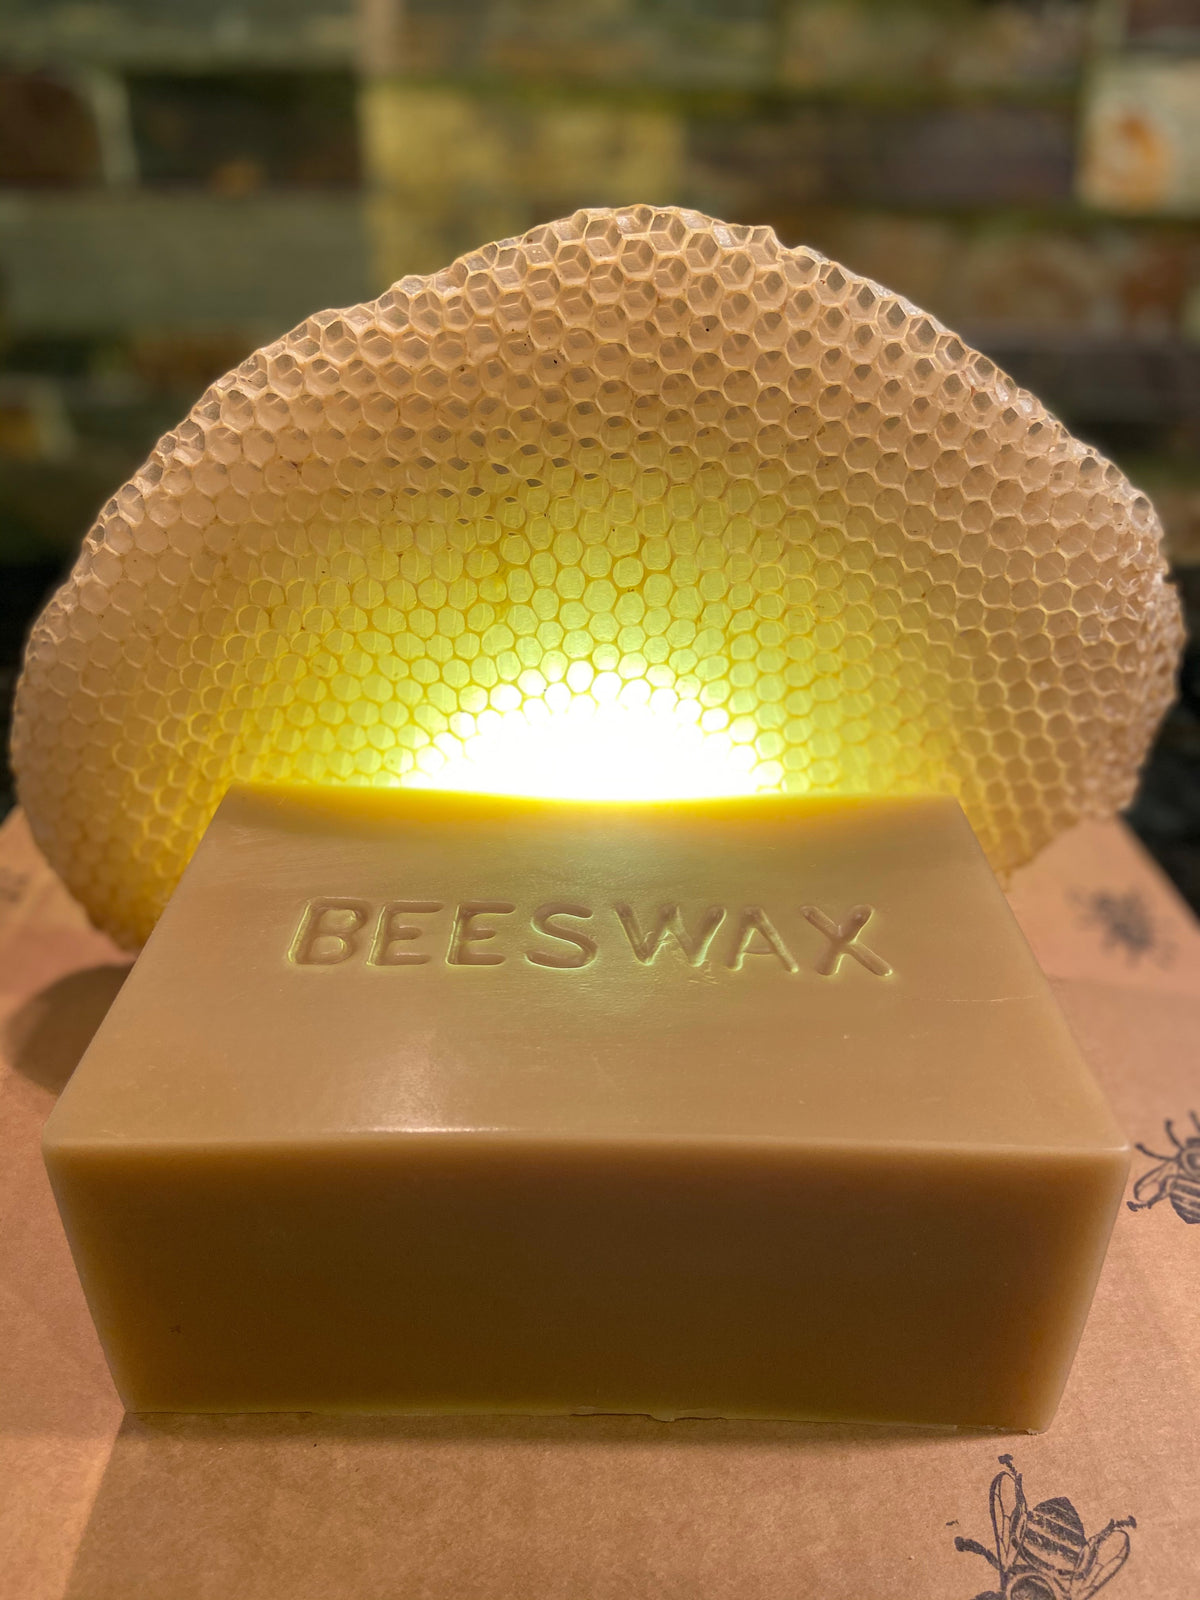 SweetNes Honey 2lb Block of Texas Beeswax (Beekeepers Wax)